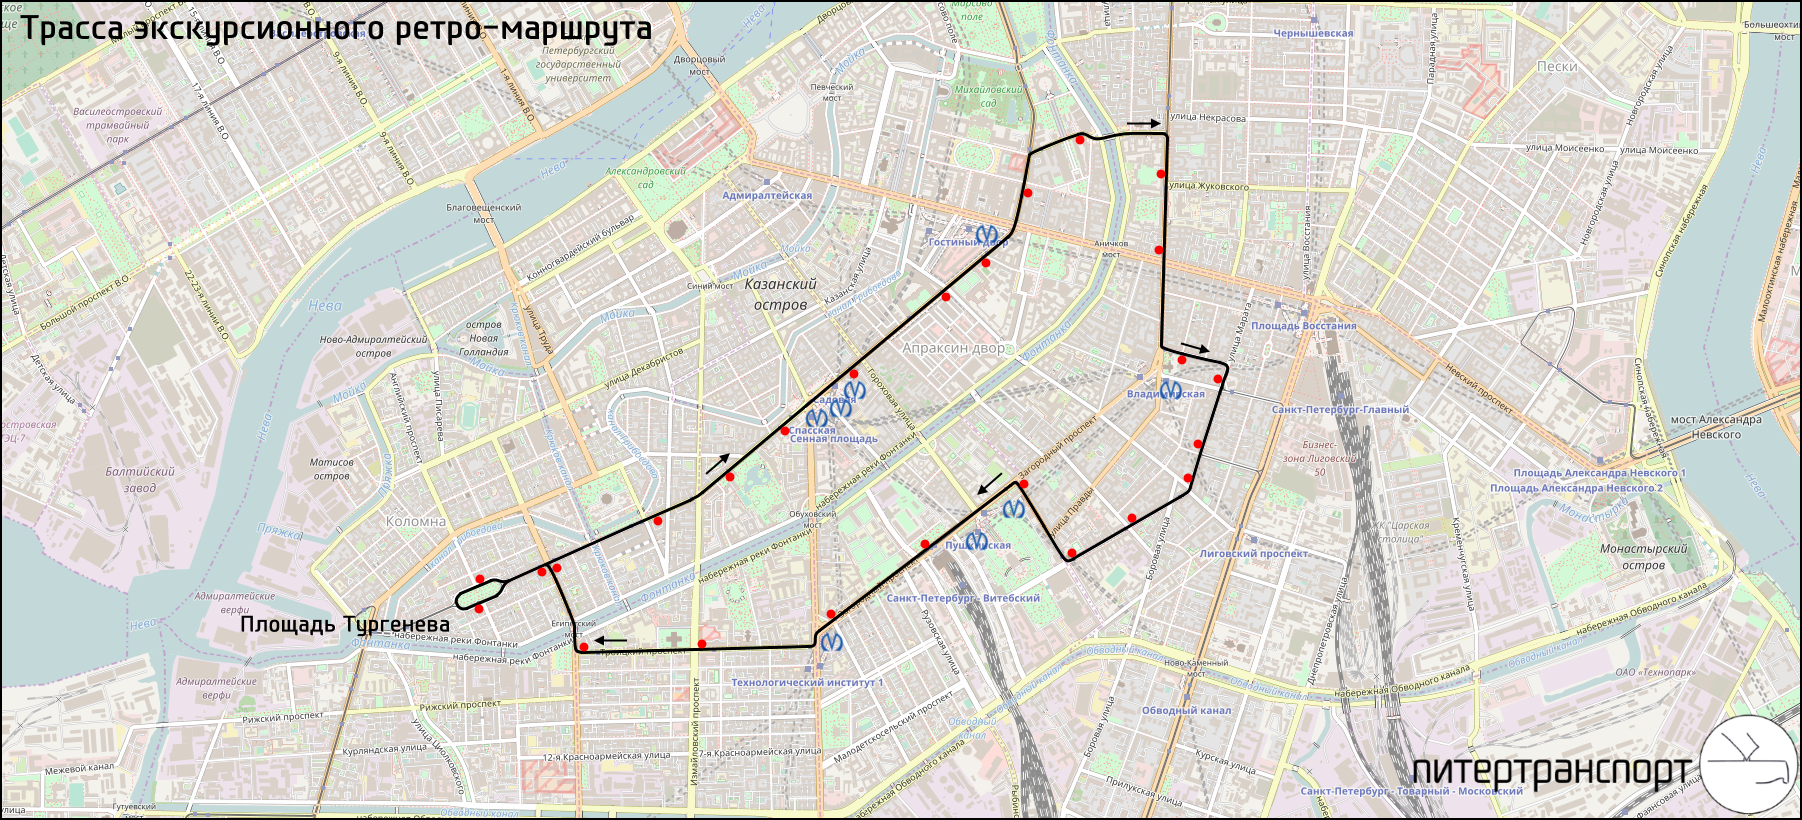 Автобус 290 маршрут на карте спб. Трамвай 3 СПБ маршрут. Трамвайный маршрут 16 Санкт-Петербург. 49 Трамвай маршрут СПБ. Маршрут трамвая 3 Санкт-Петербург на карте с остановками.